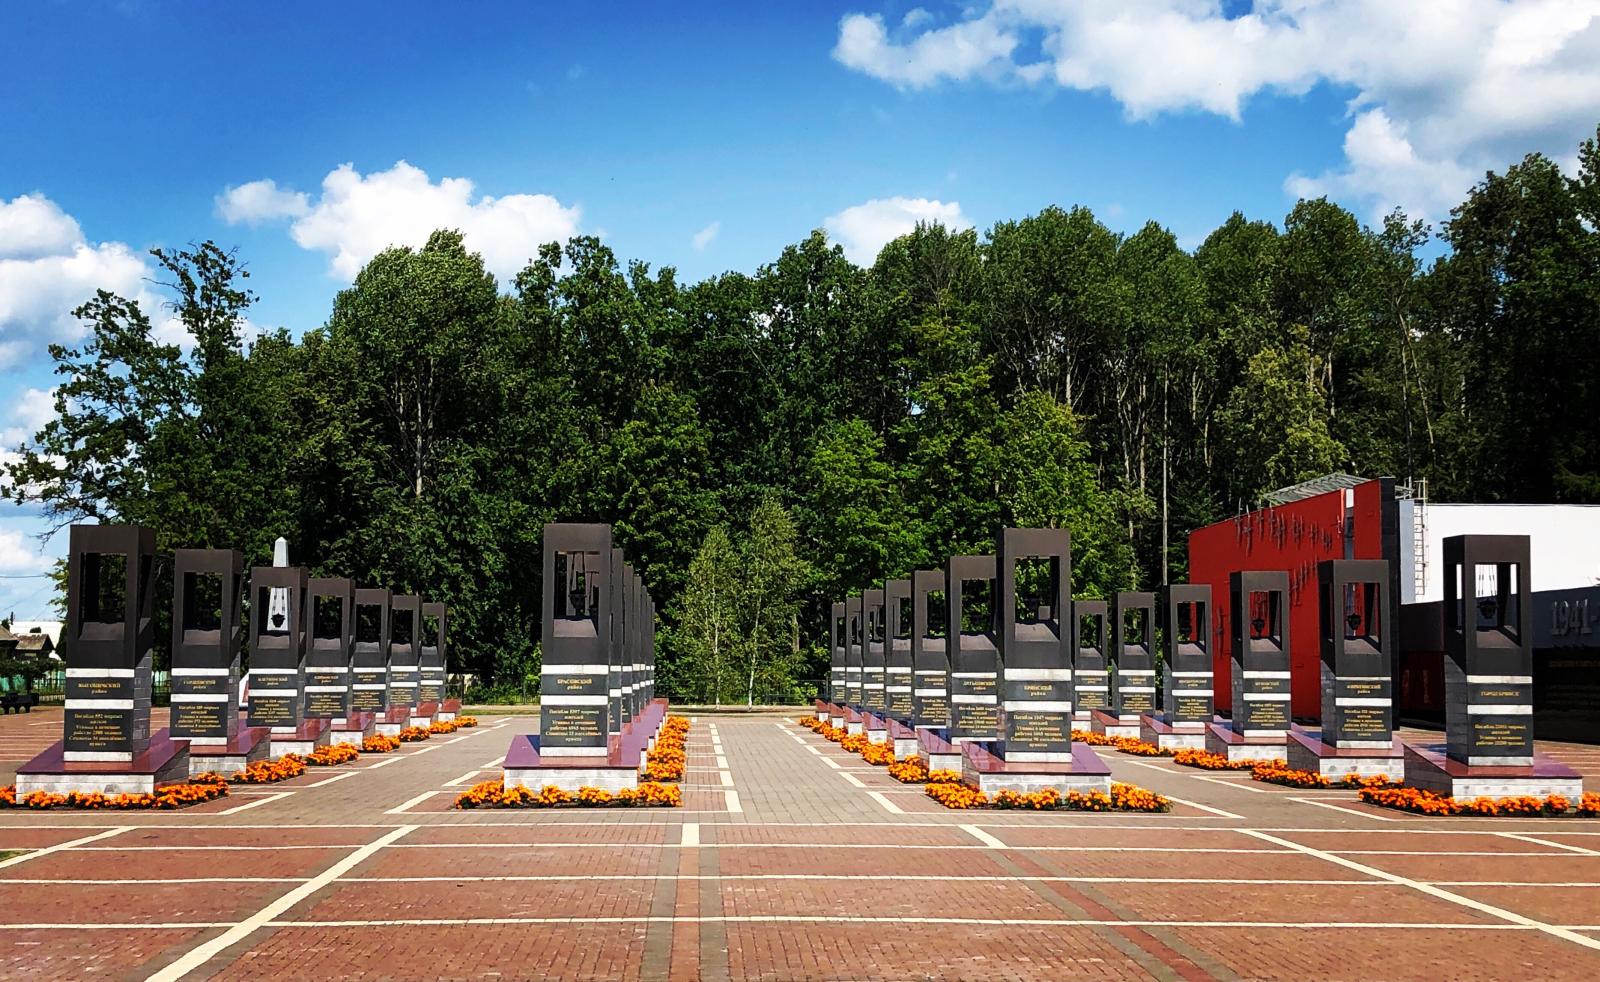 25 октября на Брянщине отмечают День памяти мирных жителей, расстрелянных в Хацуни